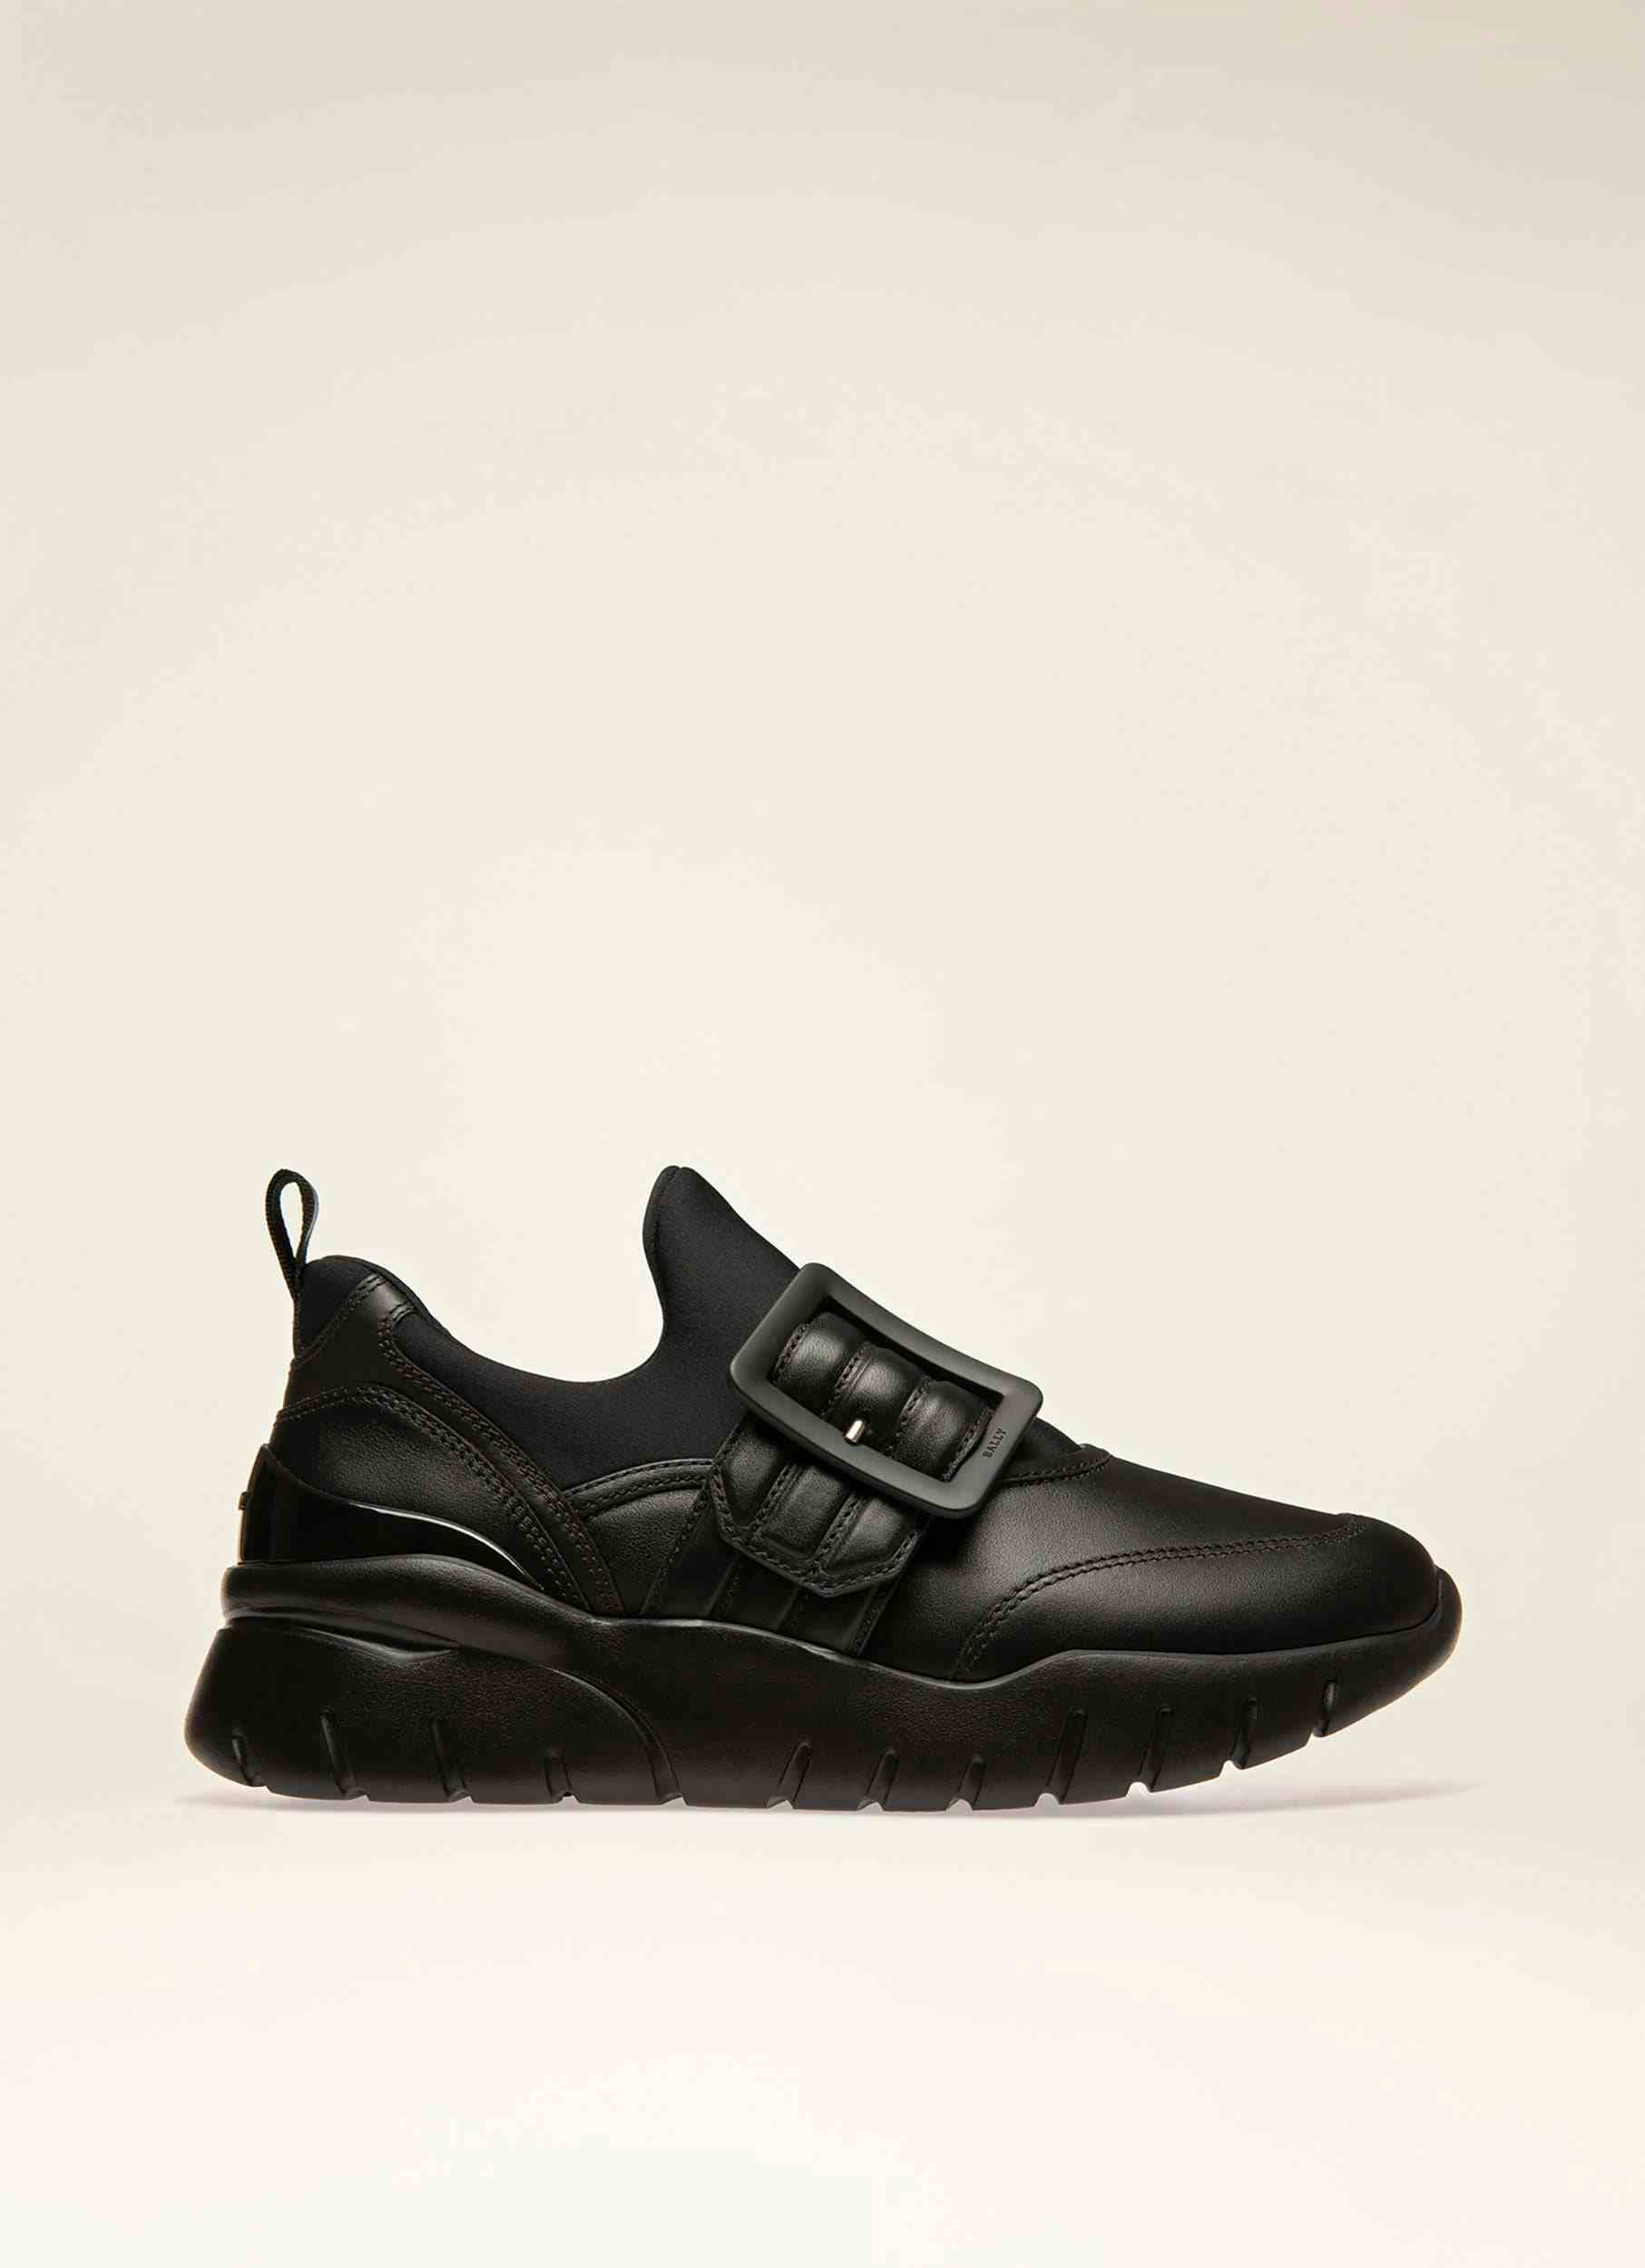 BIENNE Leather Sneakers In Black - Women's - Bally